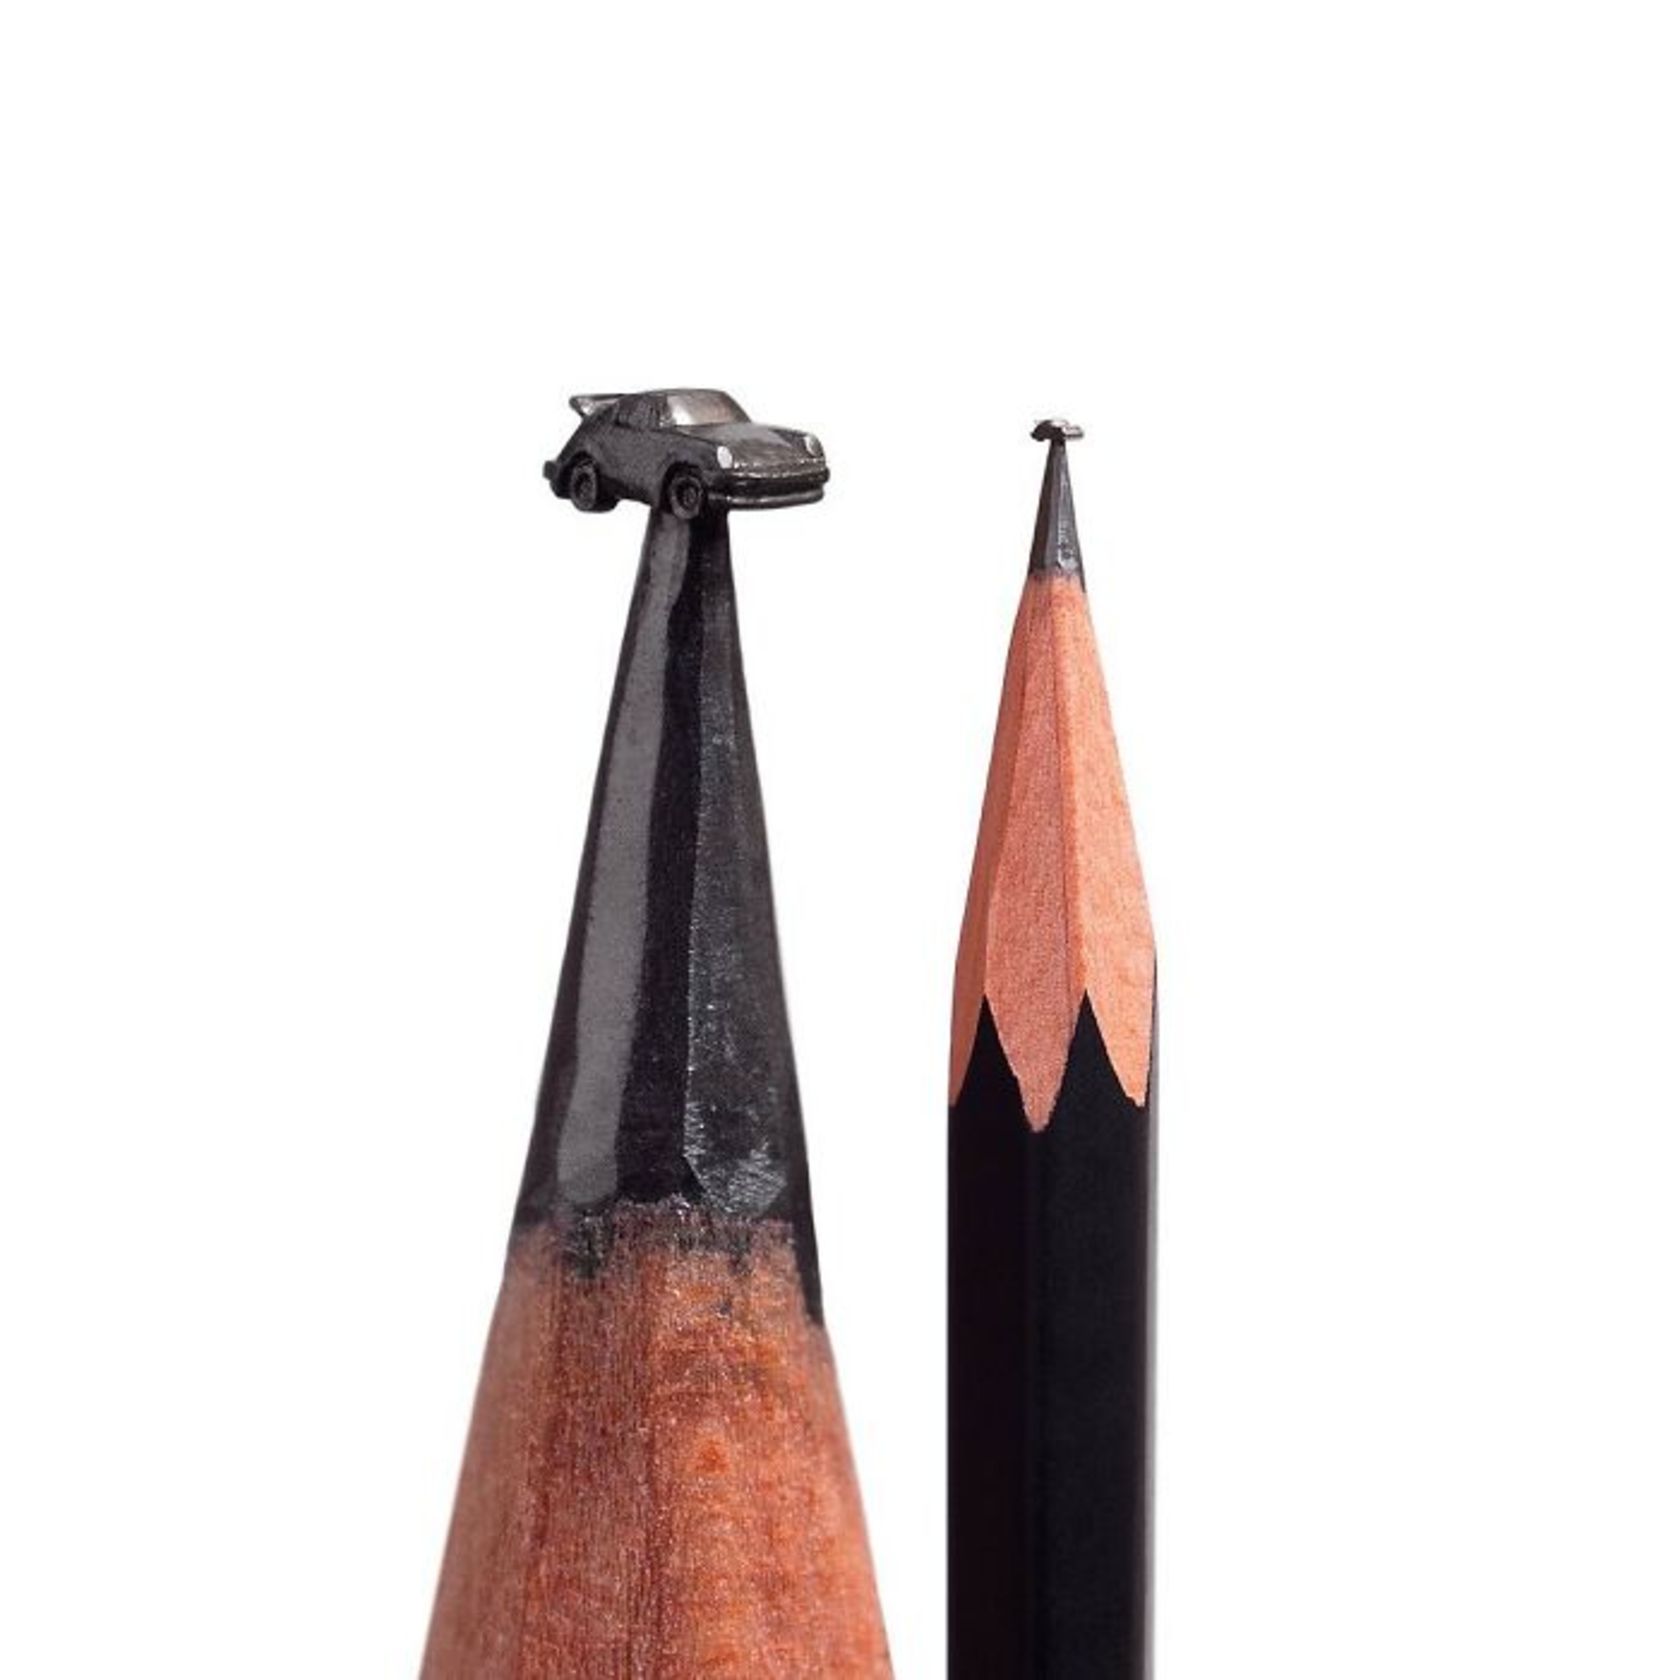 tip-of-pencil-miniature-sculptures-6-661ee7a4a55162c757fc5945